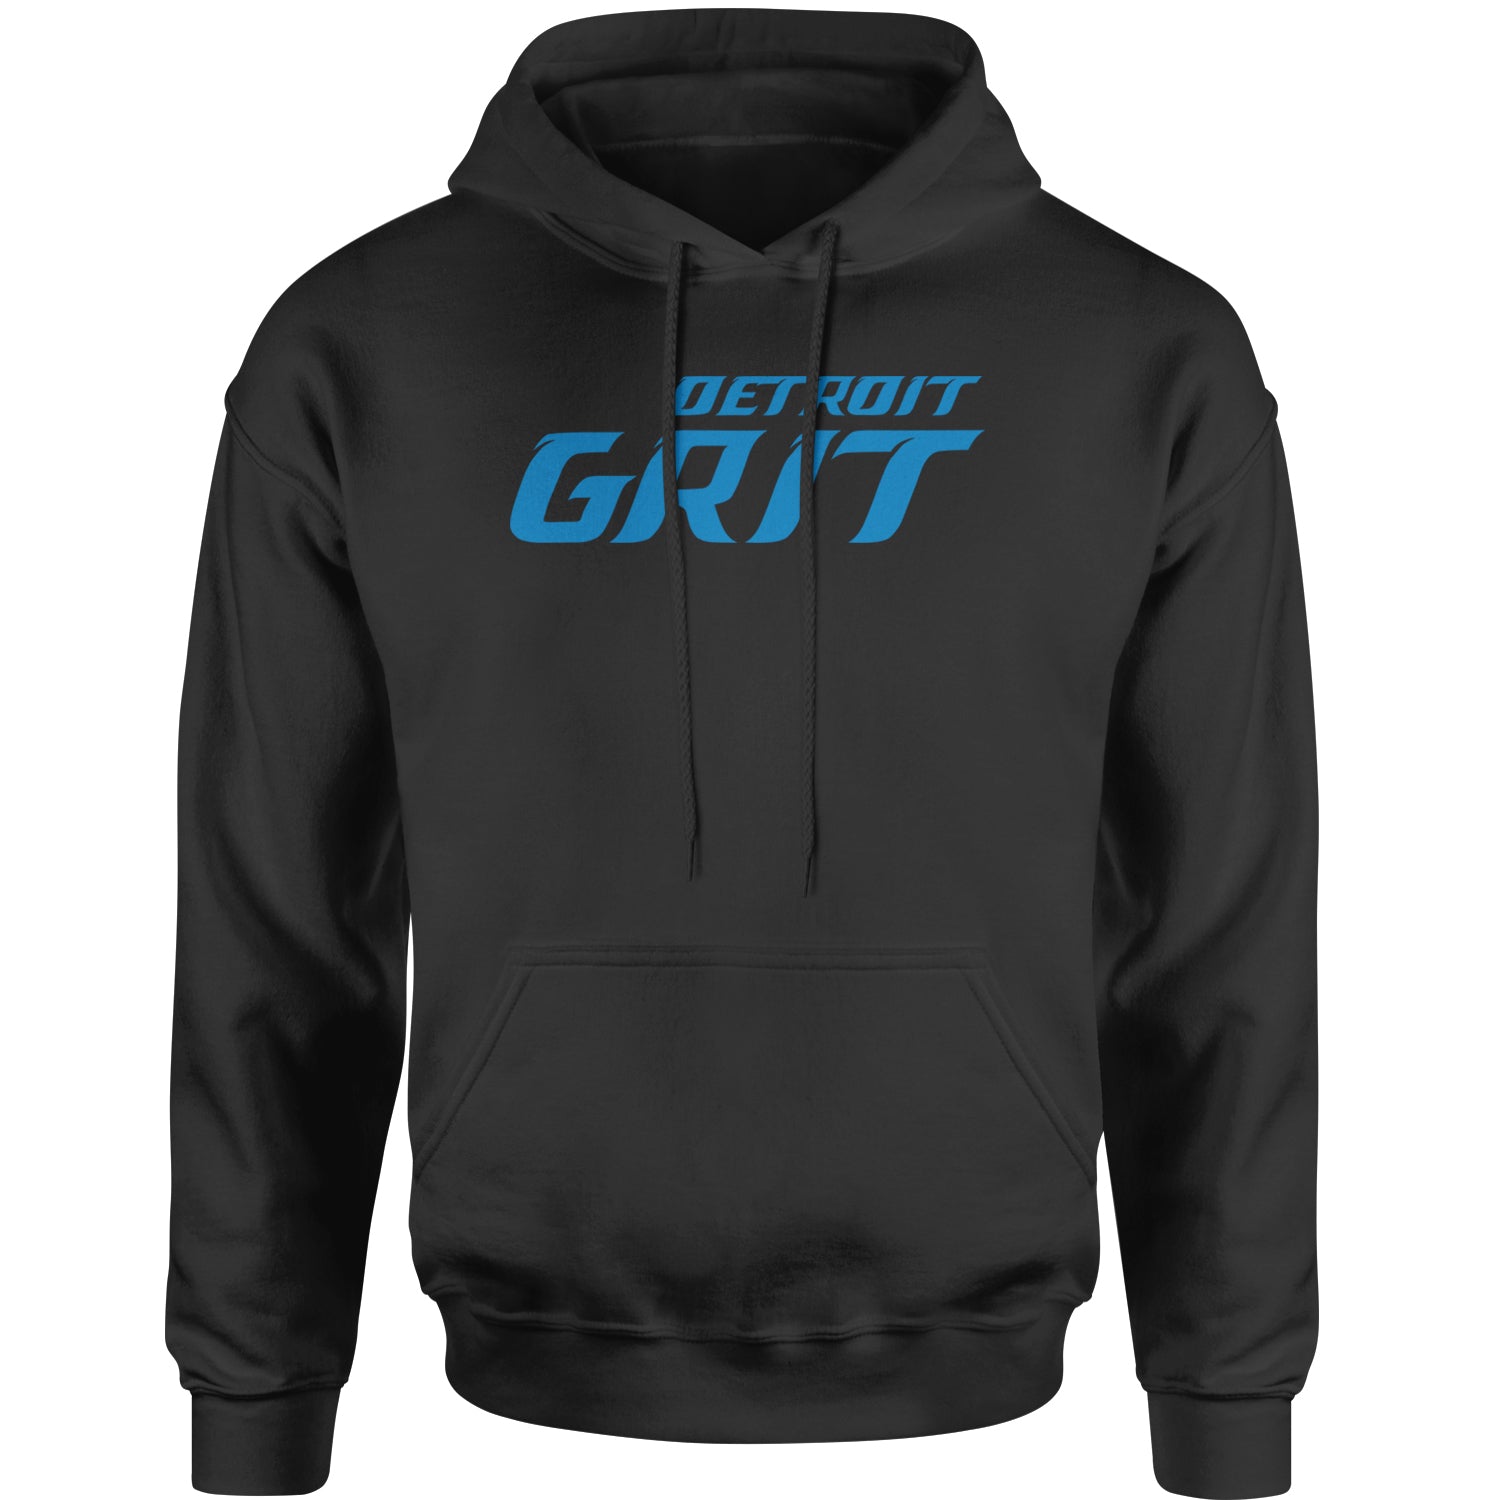 Grit Detroit Football Hard Knocks Adult Hoodie Sweatshirt